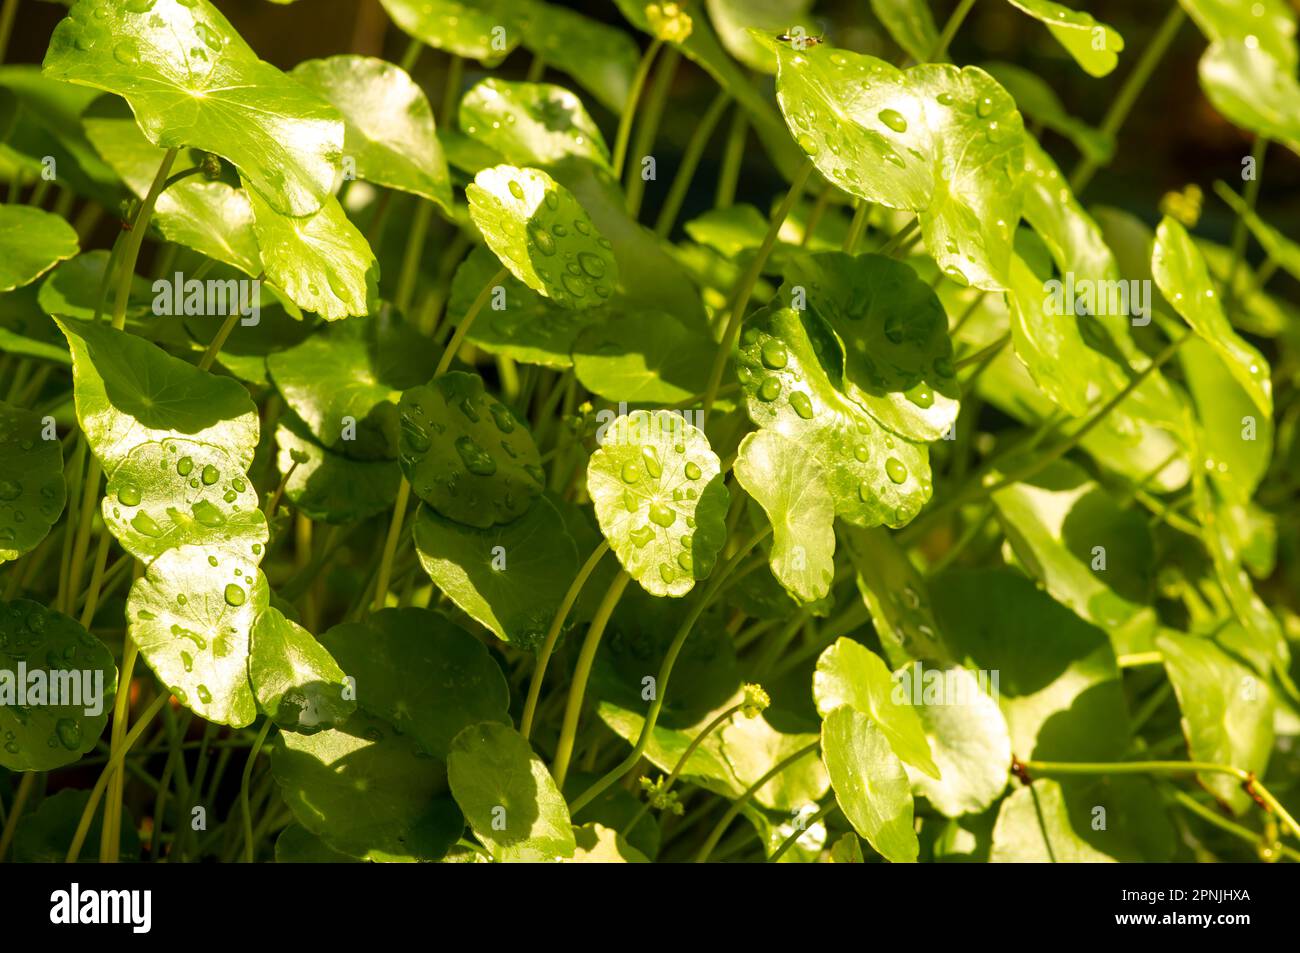 Close up of Daun Pegagan, Centella asiatica leaves, in shallow focus Stock Photo